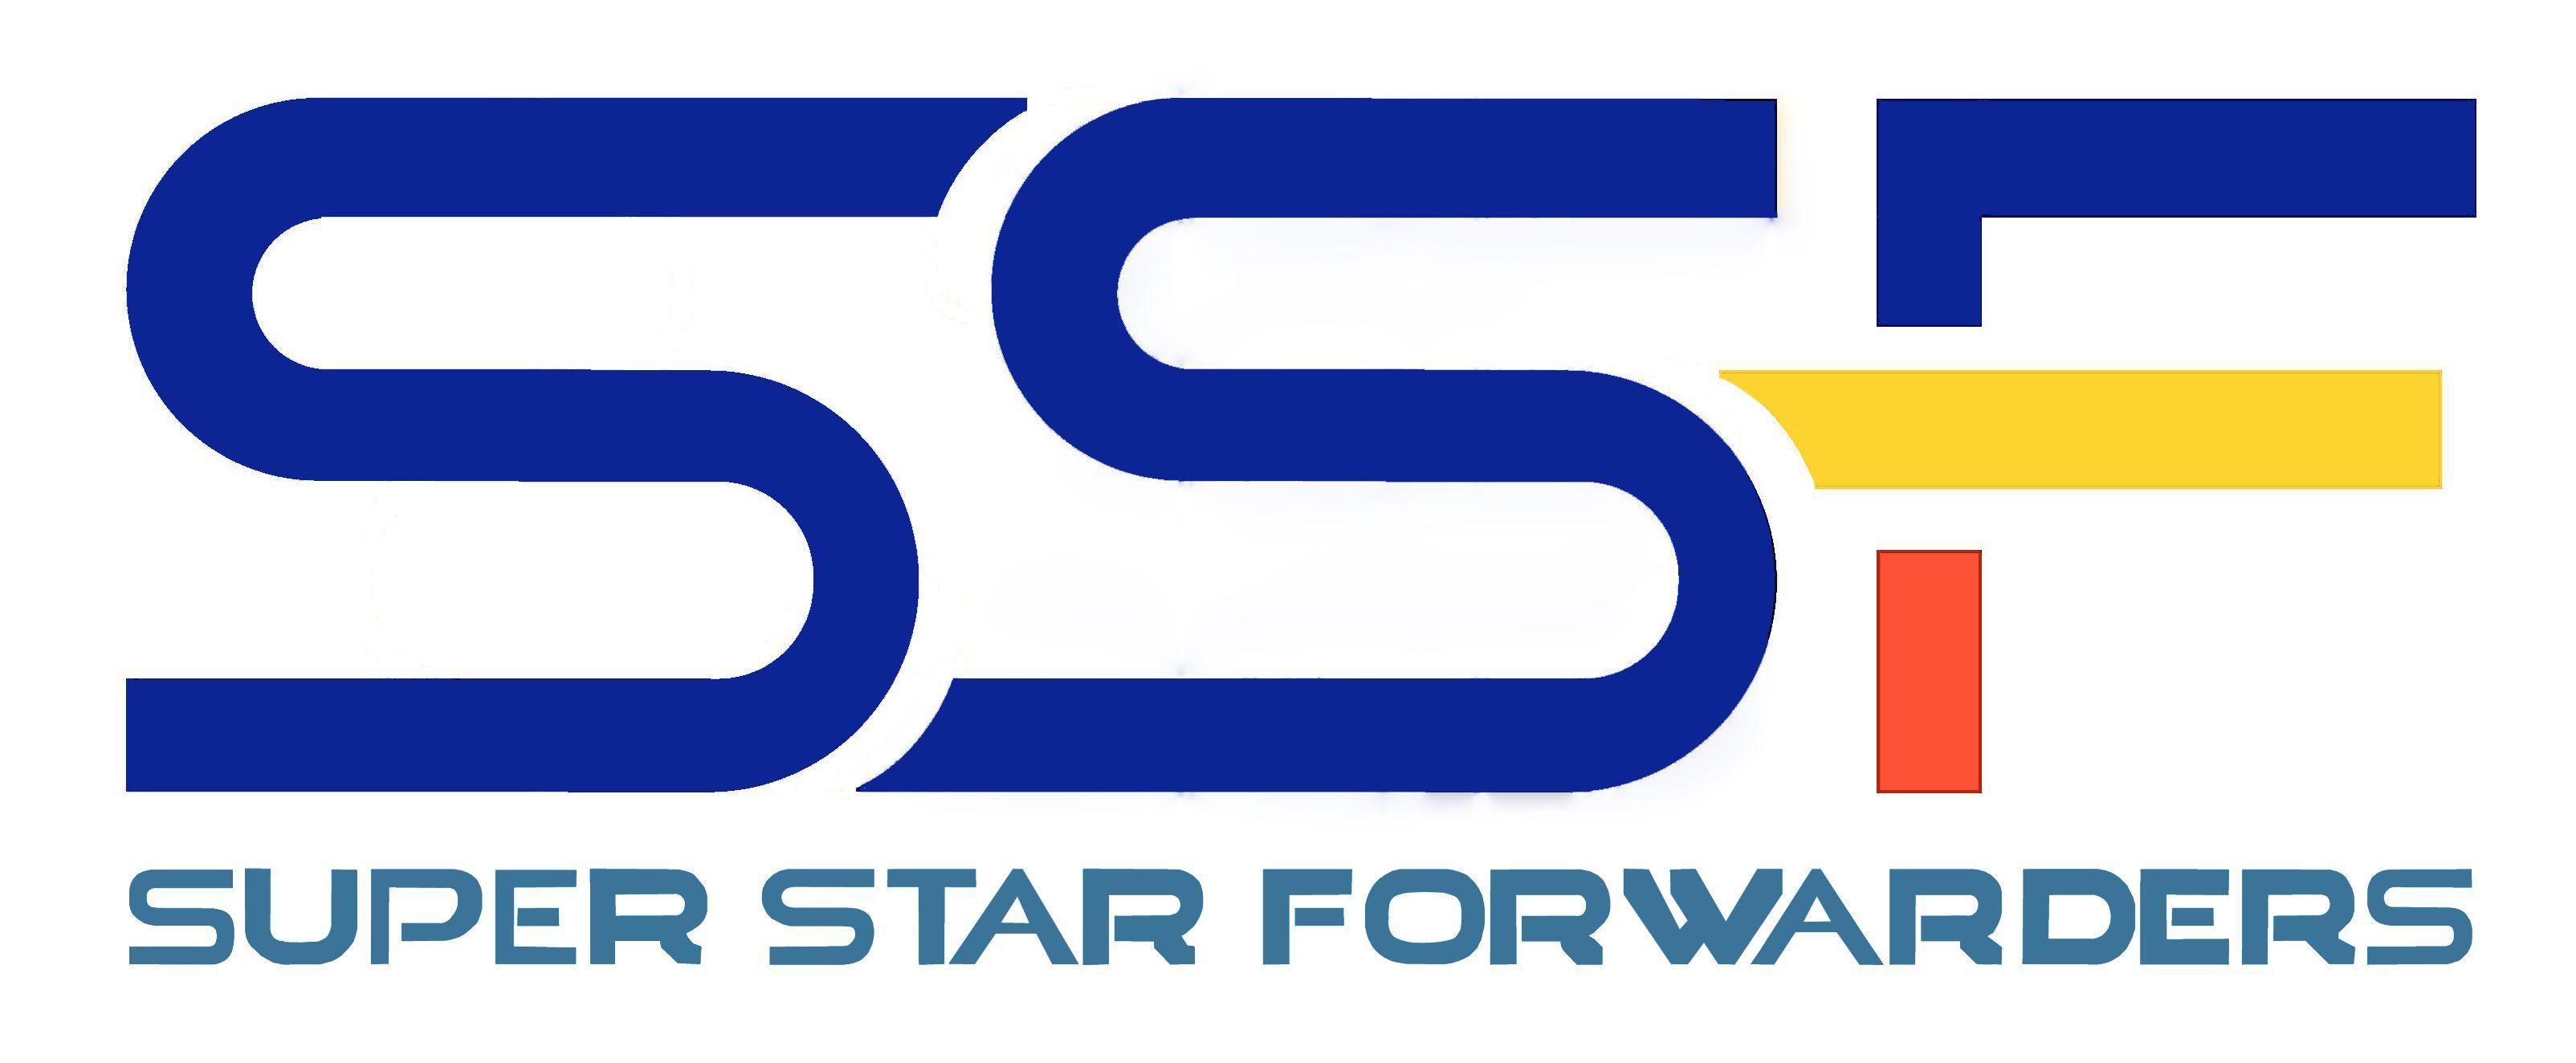 SSF Logo - Super Star Forwarders